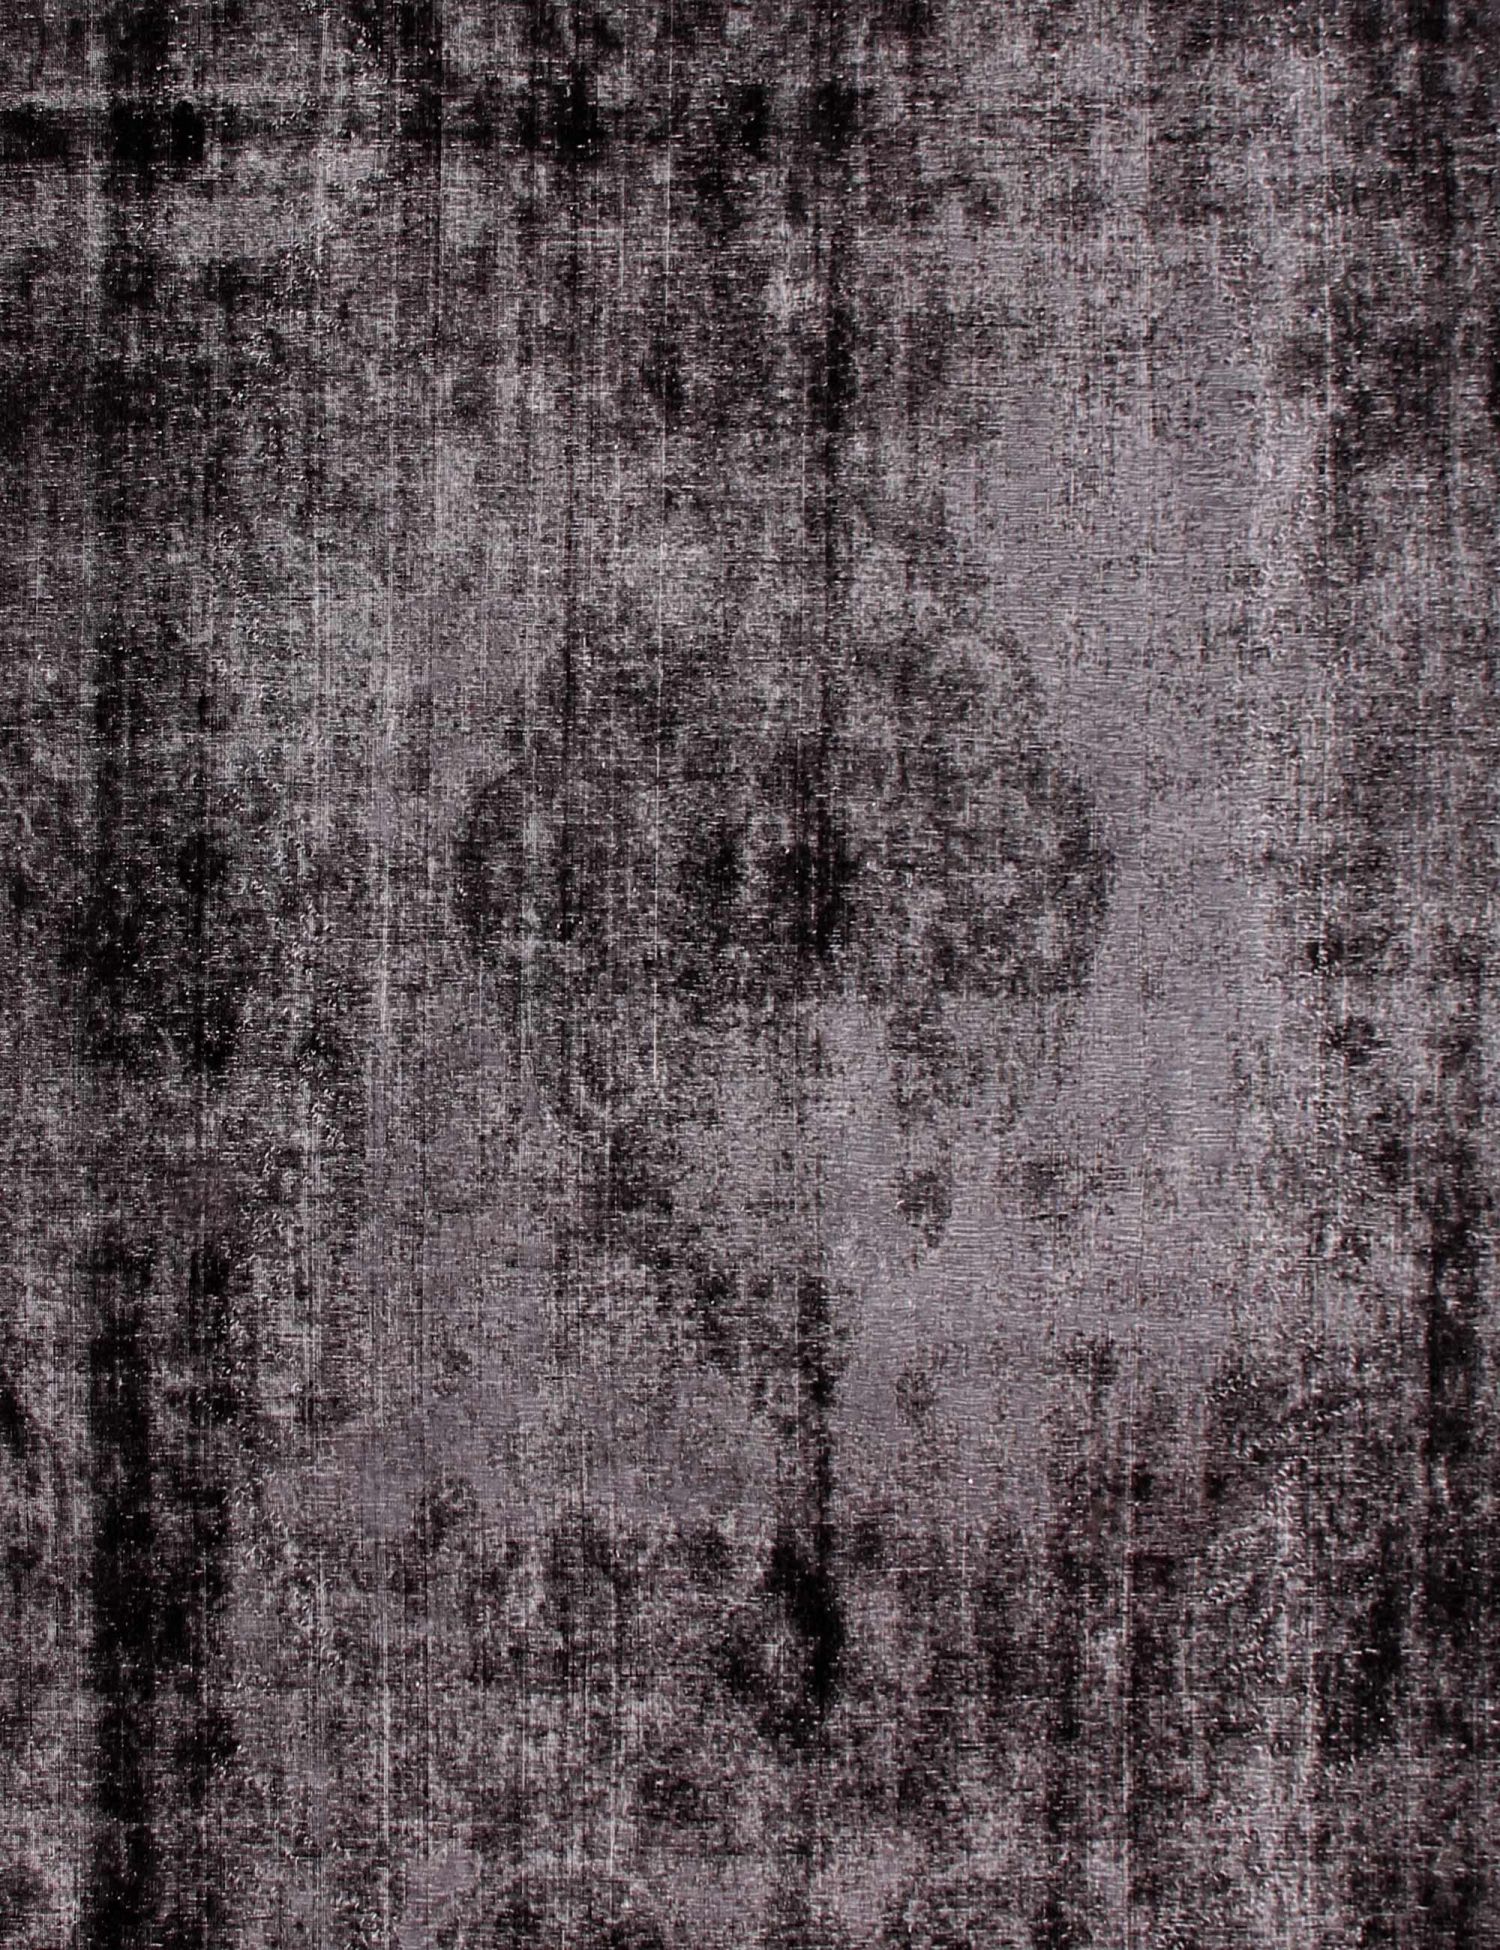 Persian Vintage Carpet  black <br/>407 x 310 cm